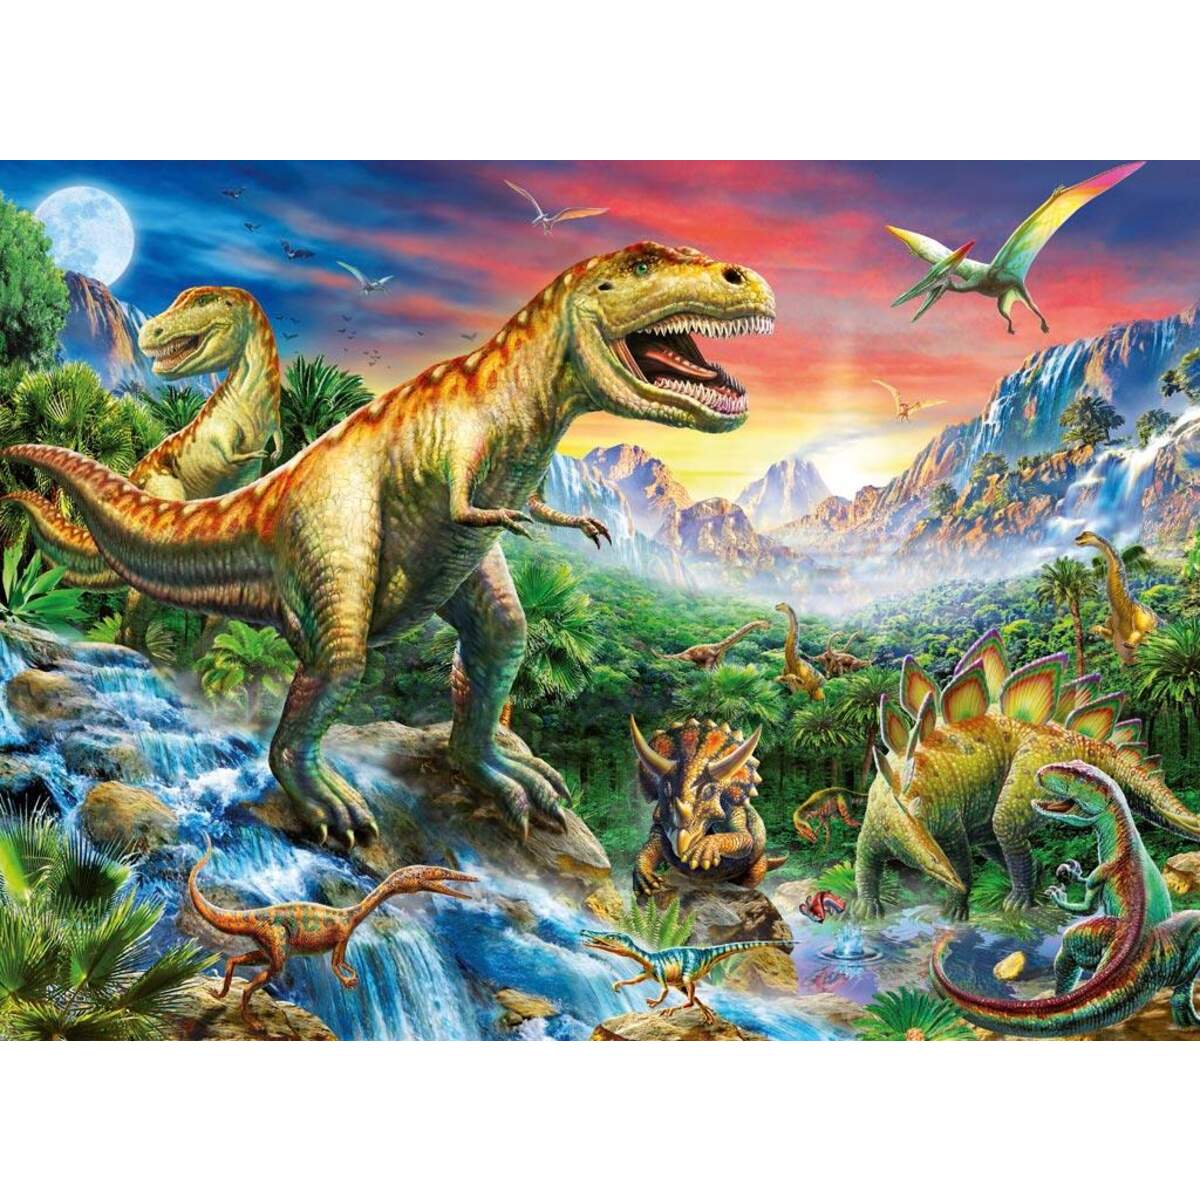 Ravensburger XXL Puzzle Bei den Dinosauriern, 100 Teile